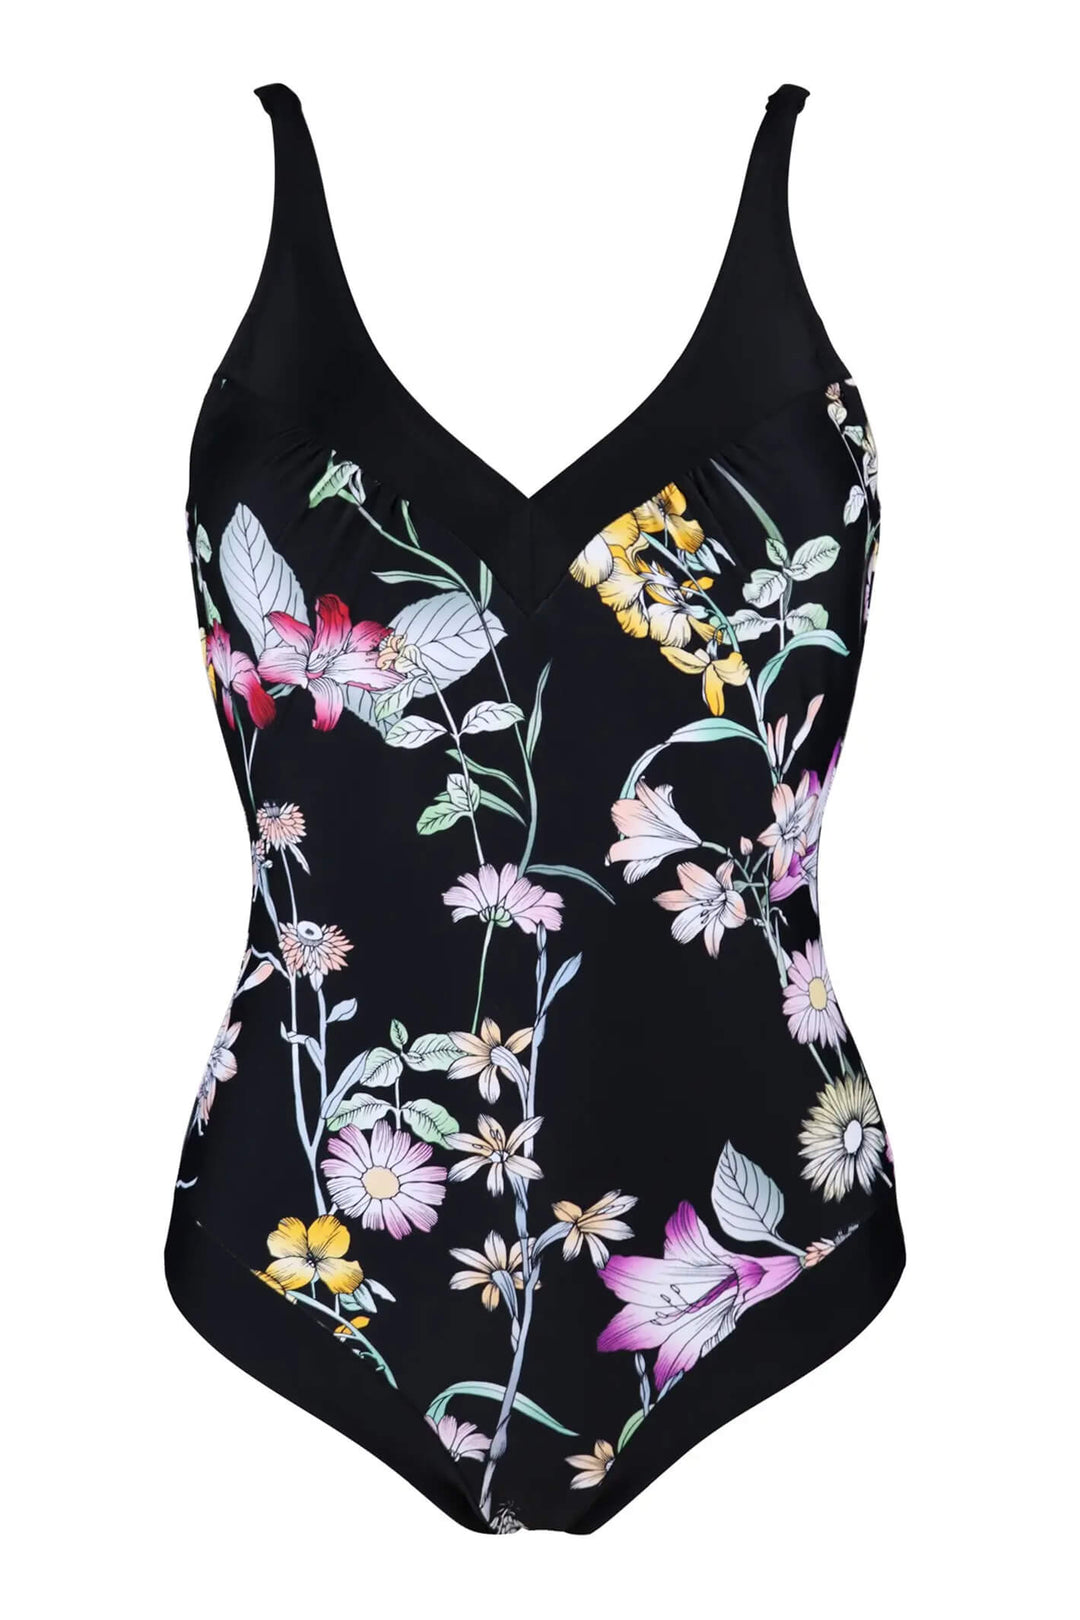 Pour Moi 1496 Black Floral Contour Control Swimsuit - Shirley Allum Boutique